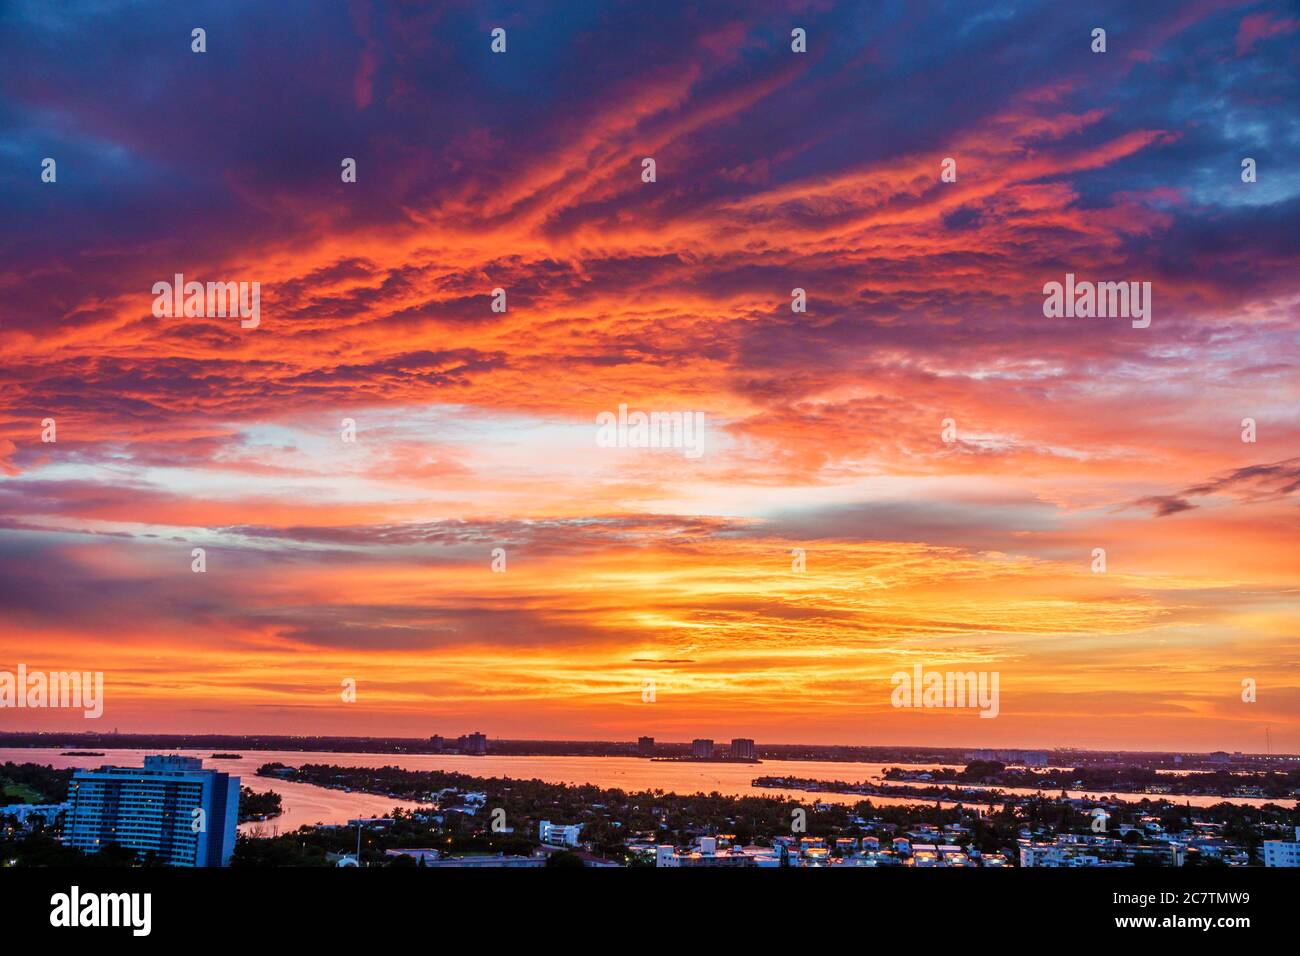 Miami Beach Florida, Biscayne Bay Water, Skyline der Stadt, Panoramablick, Wolken, dramatische Farben, Sonnenuntergang, Besucher reisen Reise Tourismus Landma Stockfoto